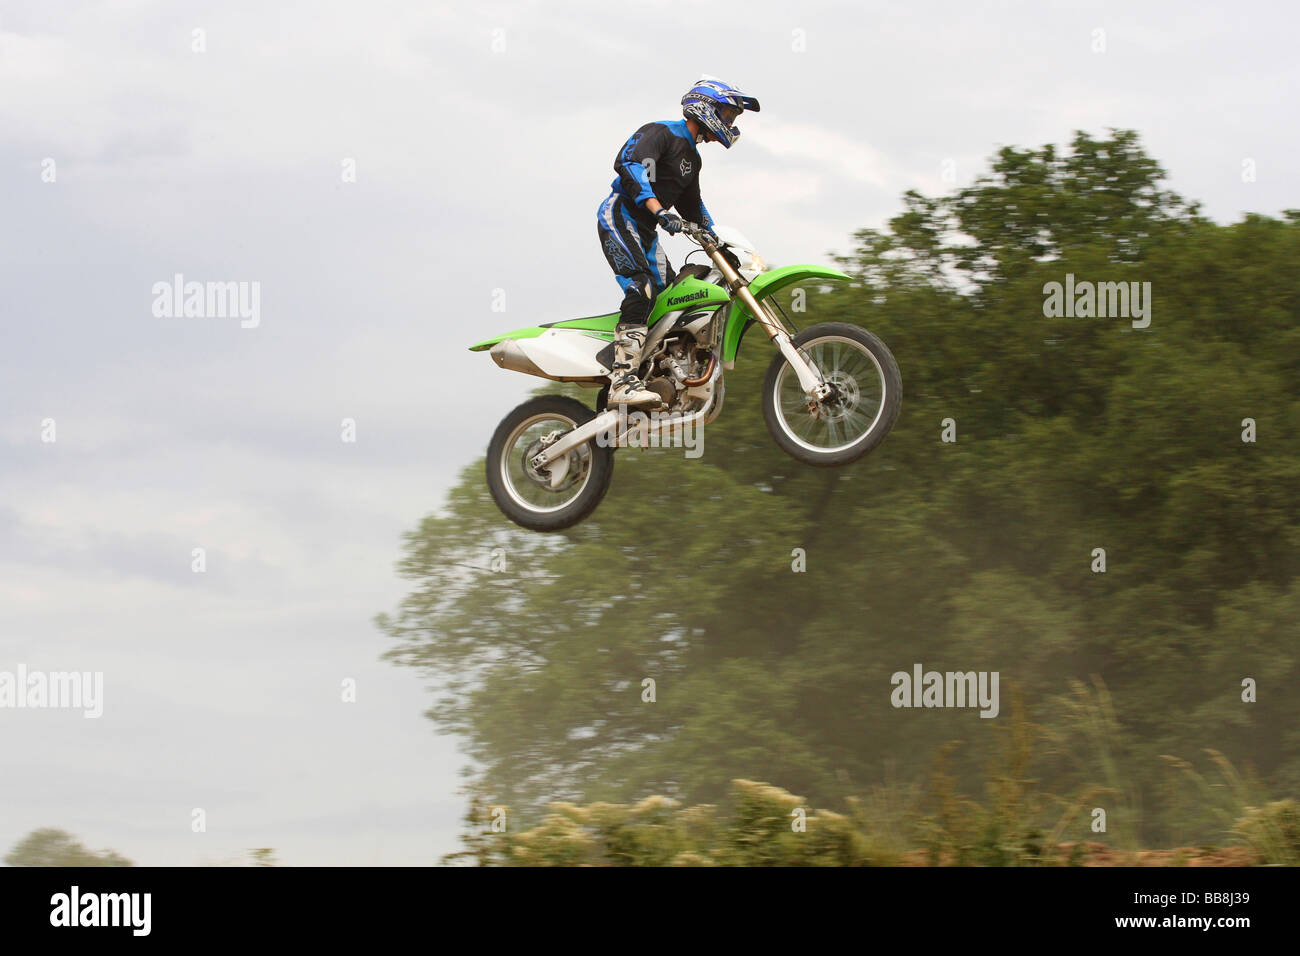 Jumping on a Kawasaki KLX 450R motorcycle Stock Photo